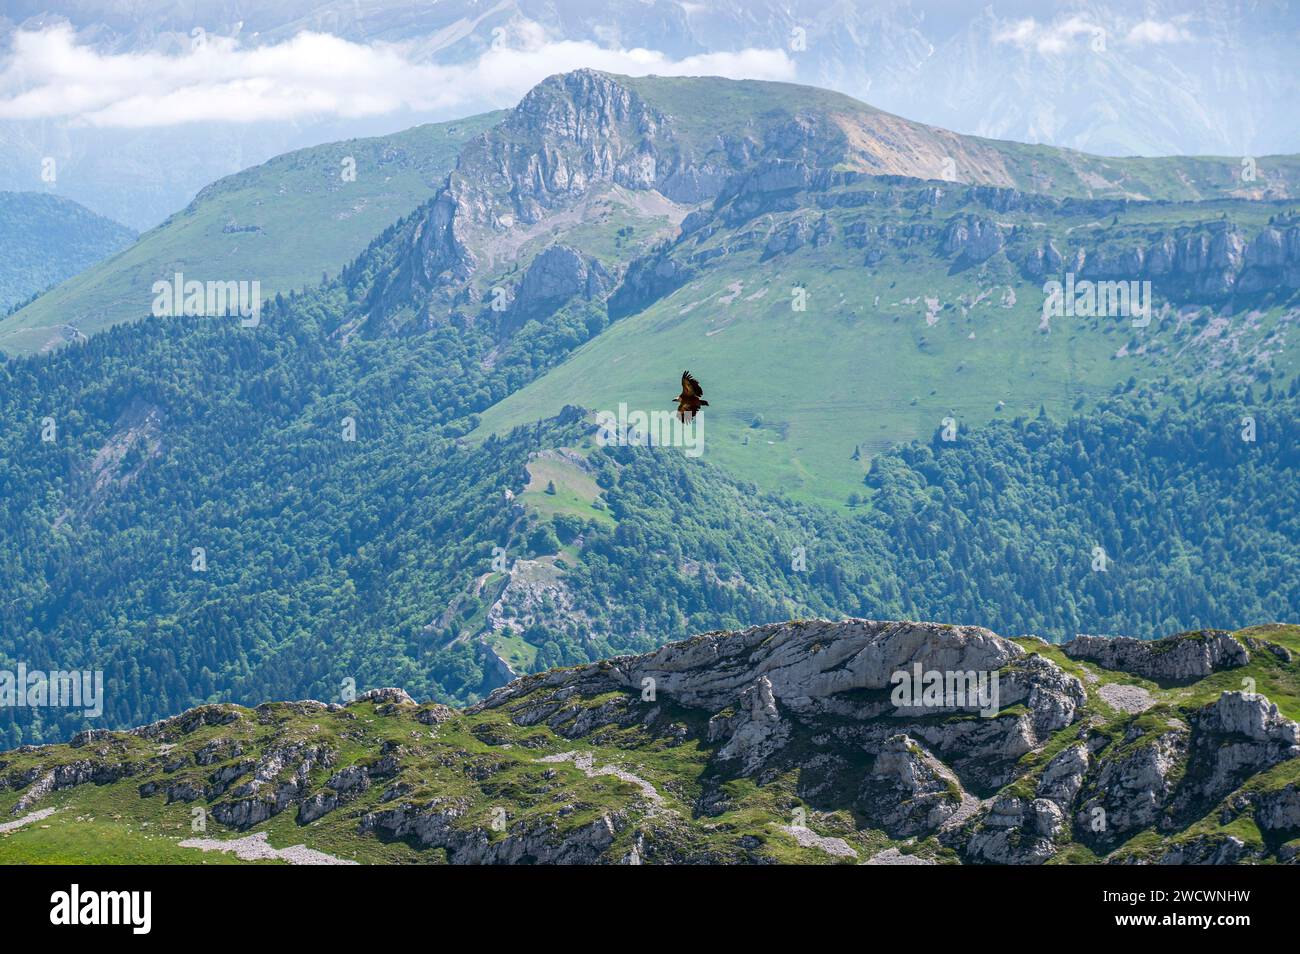 France, Drôme, lus la Croix haute, massif du Dévoluy, randonnée jusqu'au Jocou (2051m), grand oiseau de proie. Banque D'Images